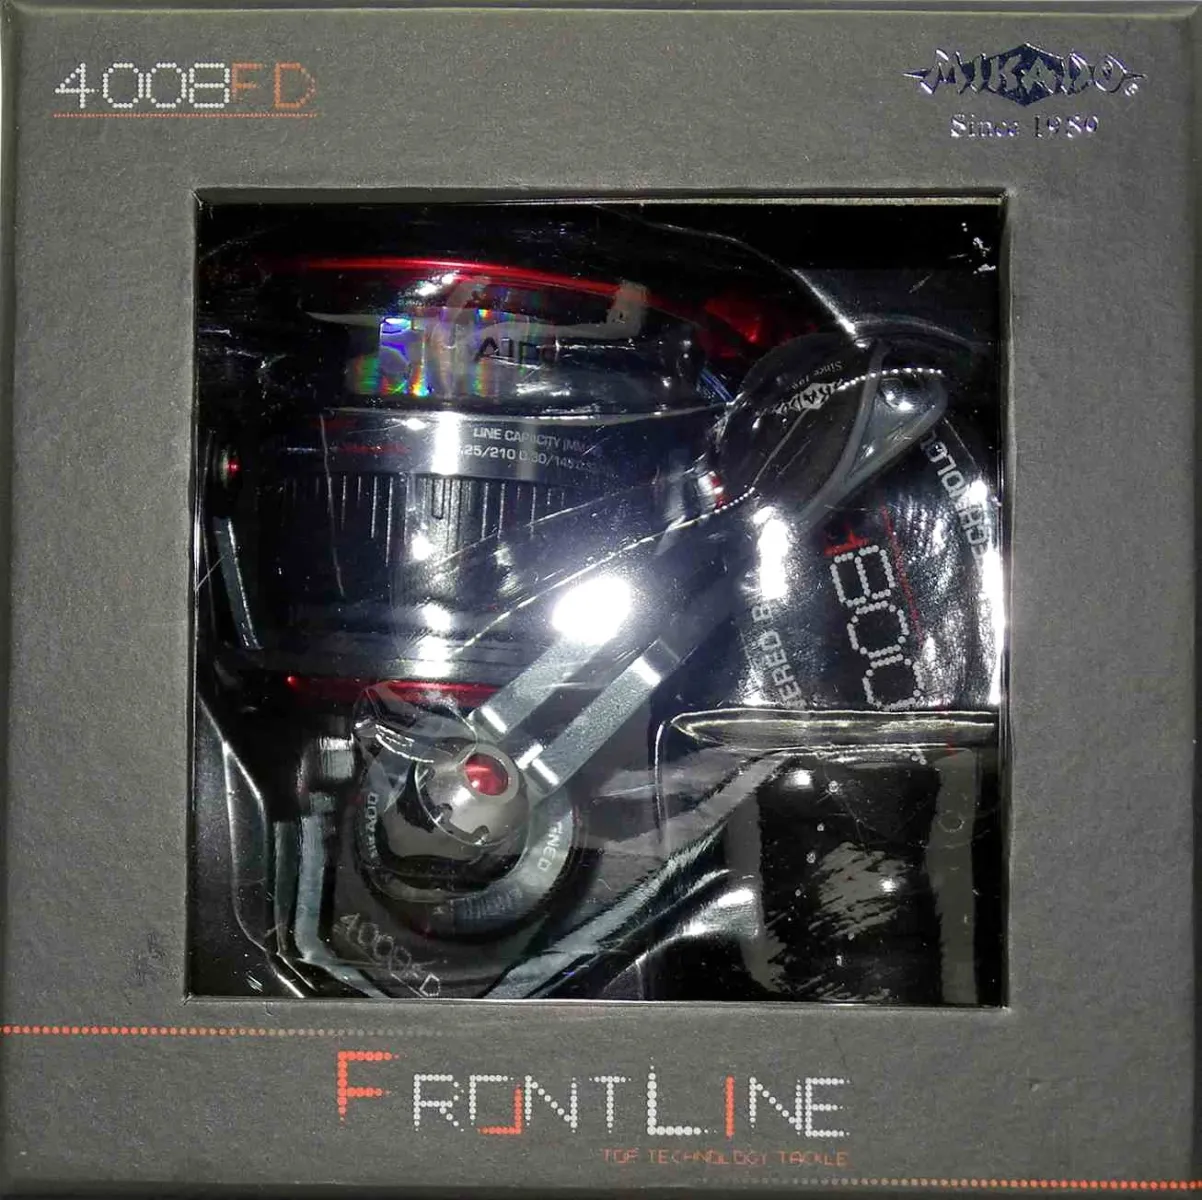 Mikado Frontline 4008 FD mit Freilauf System Angelrolle Grundfischen Allround 